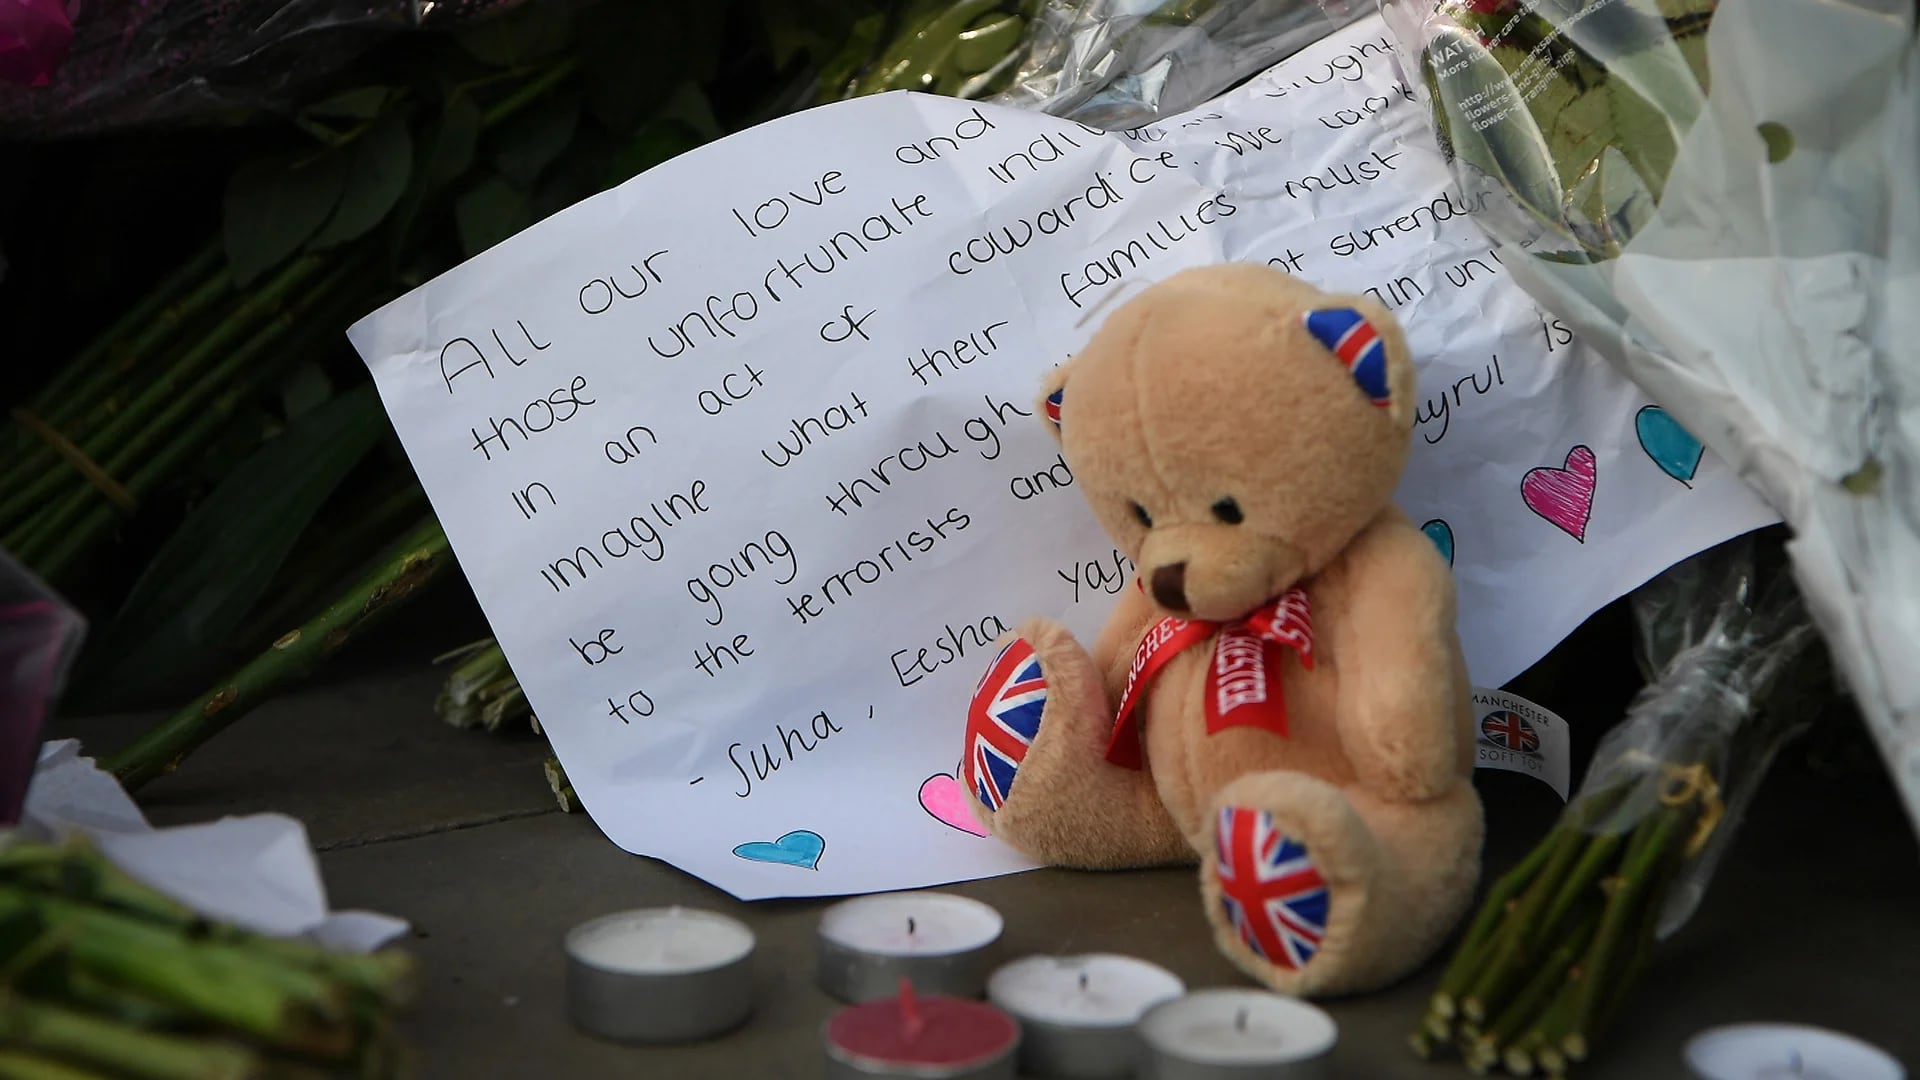 La gente se mostró conmovida tras el atentado (Getty Images)